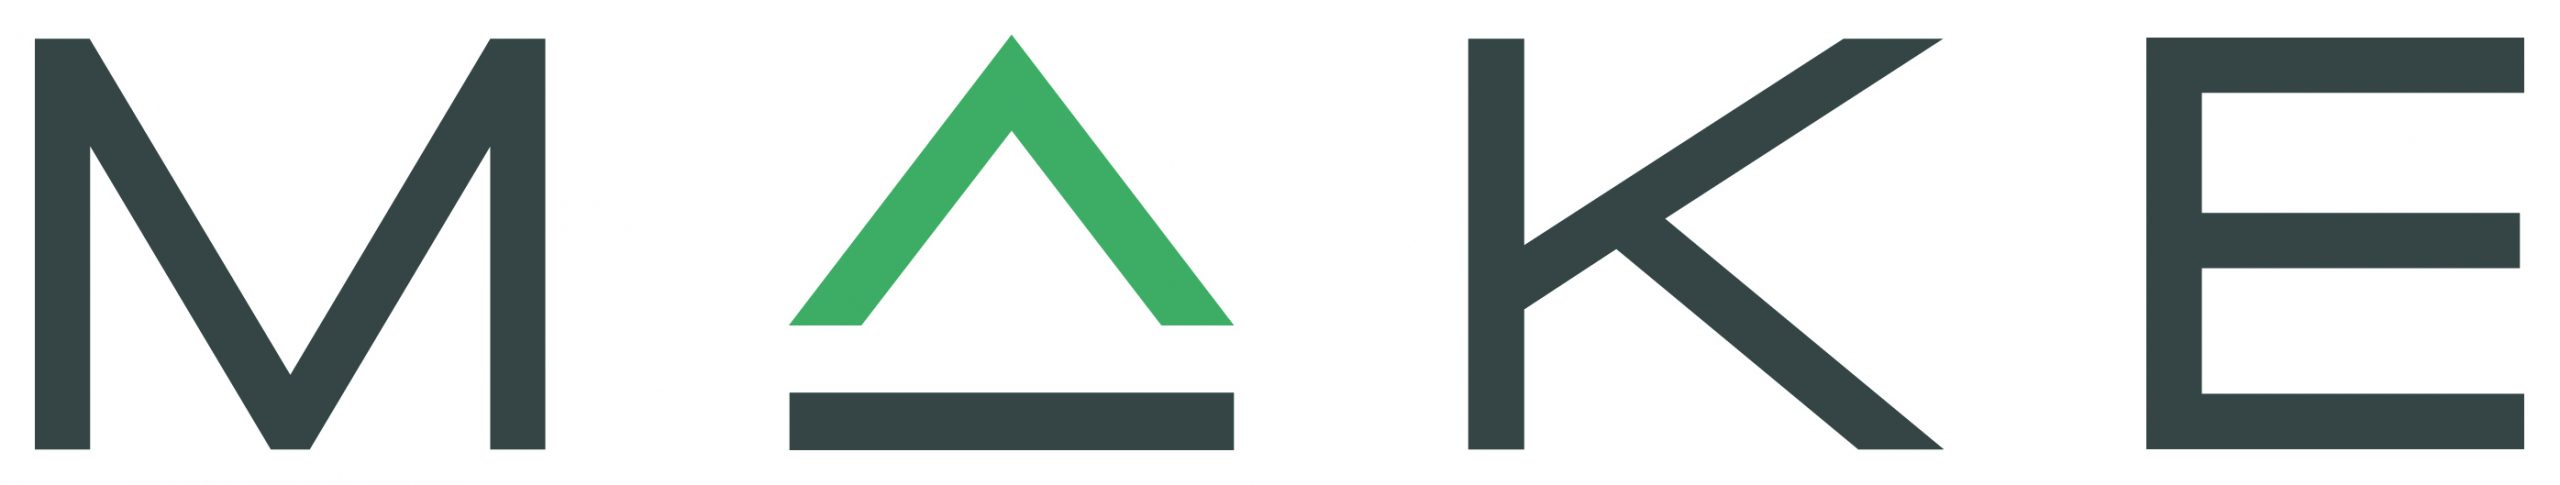 MAKE company logo